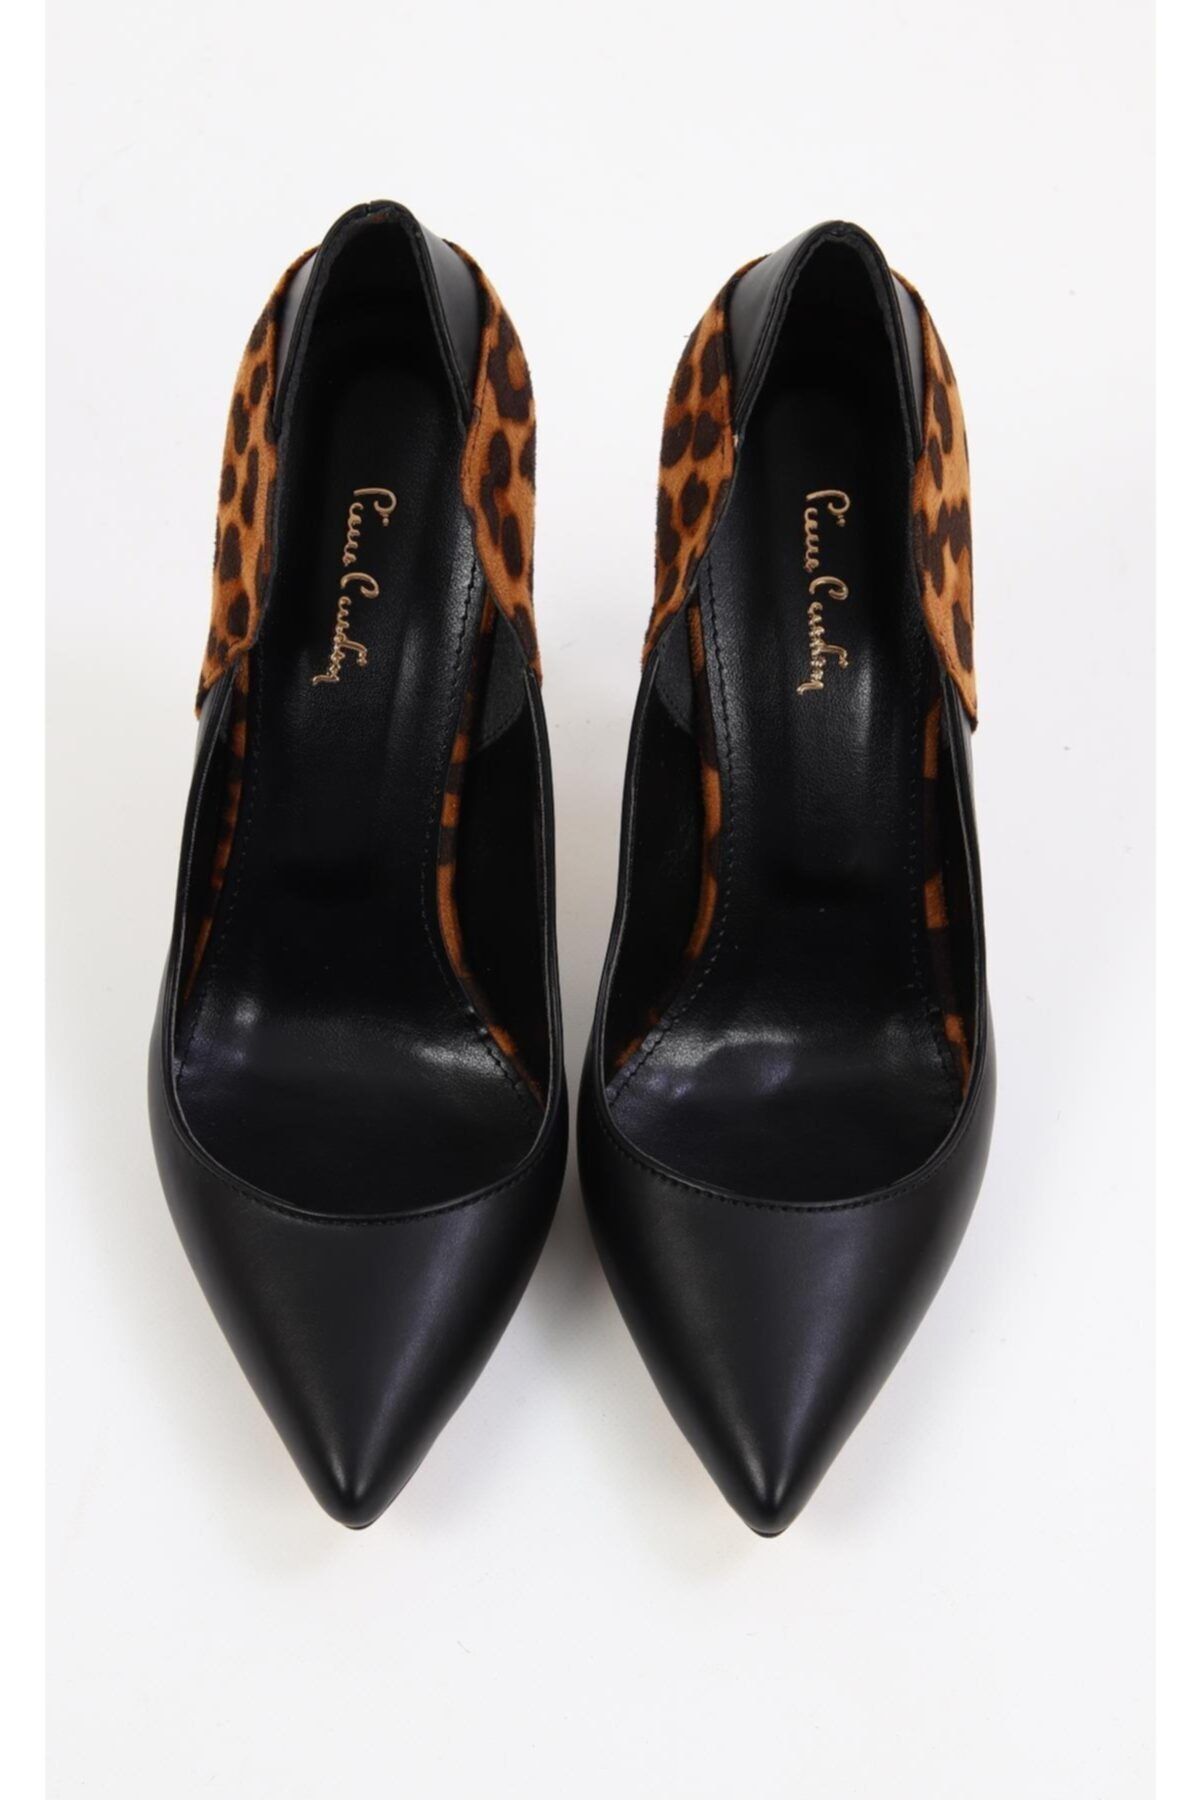 Pierre Cardin Topuklu Ayakkabı, Leopar-siyah (Pc-50141 119)